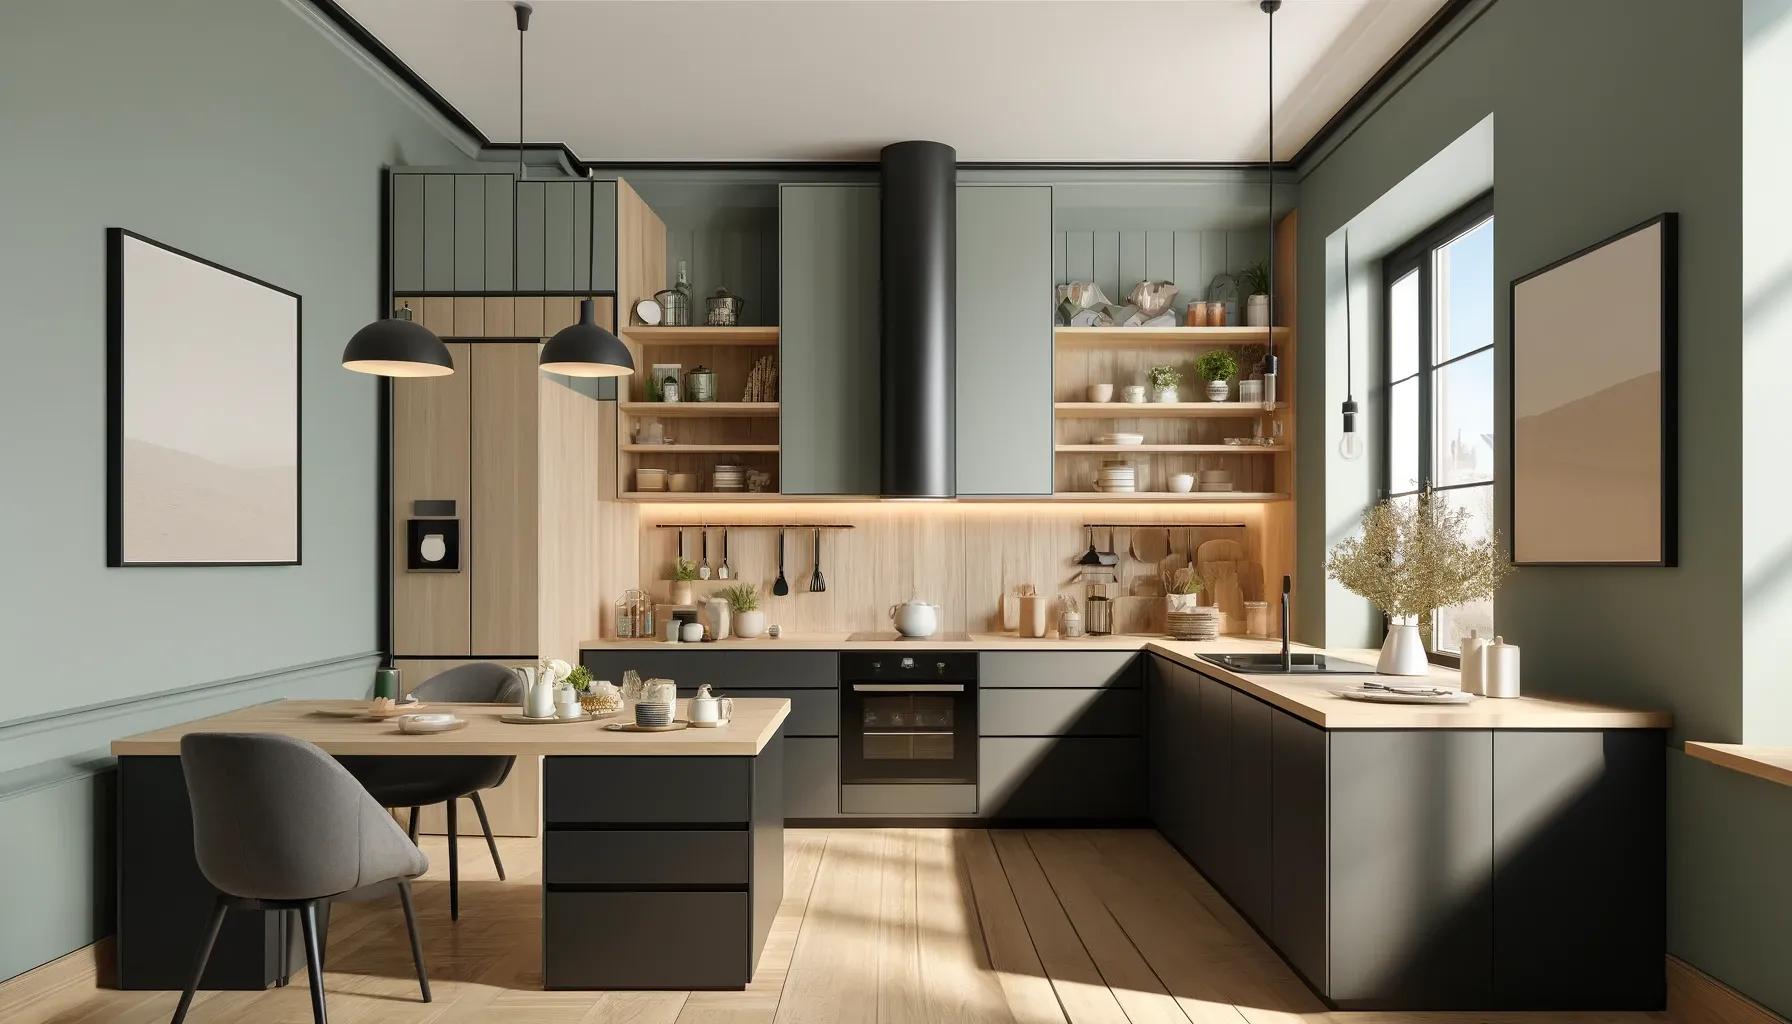 Eine moderne europäische Küche mit mattschwarzen Schränken und hellen Holzakzenten, pastellgrünen Wänden und großen Fenstern, die eine frische, beruhigende Atmosphäre schaffen.